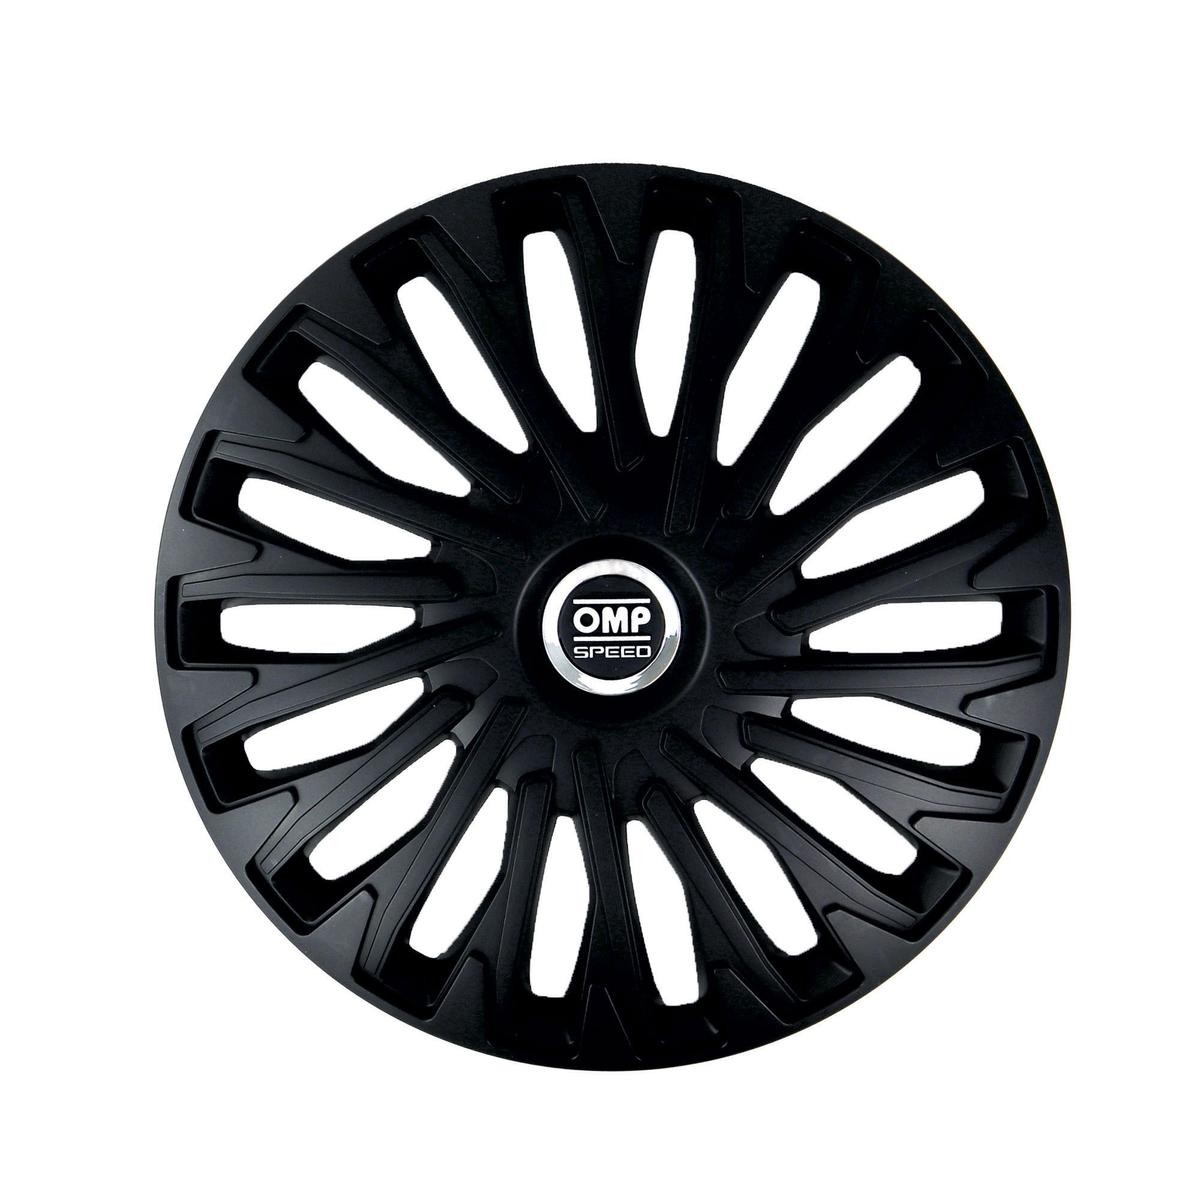 OMP OMPS07021401 Car wheel trims VW GOLF 6 (5K1) 14 Inch black